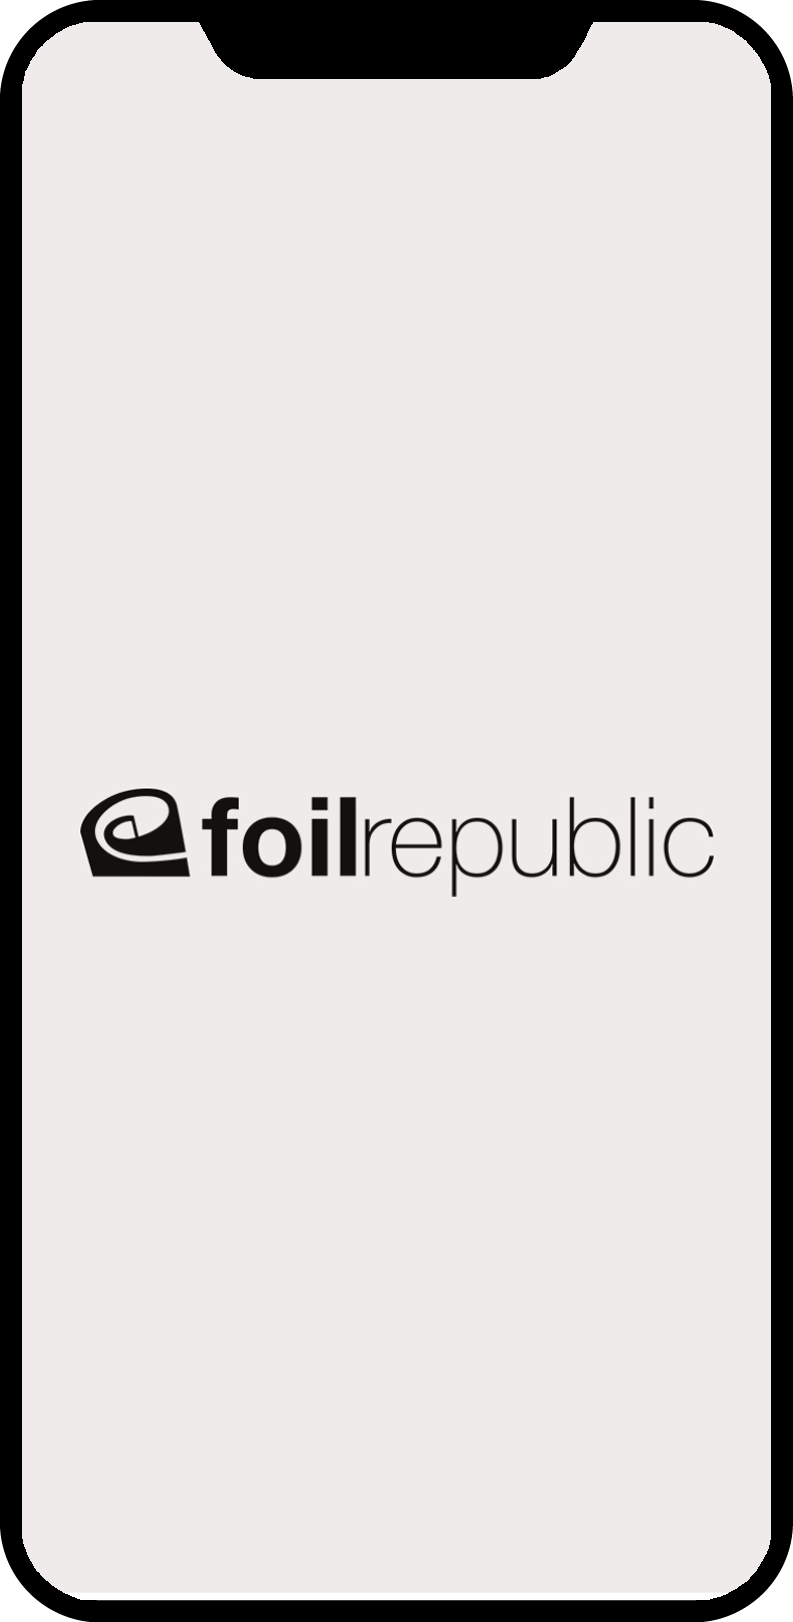 mobile-app-foil-republic-logo